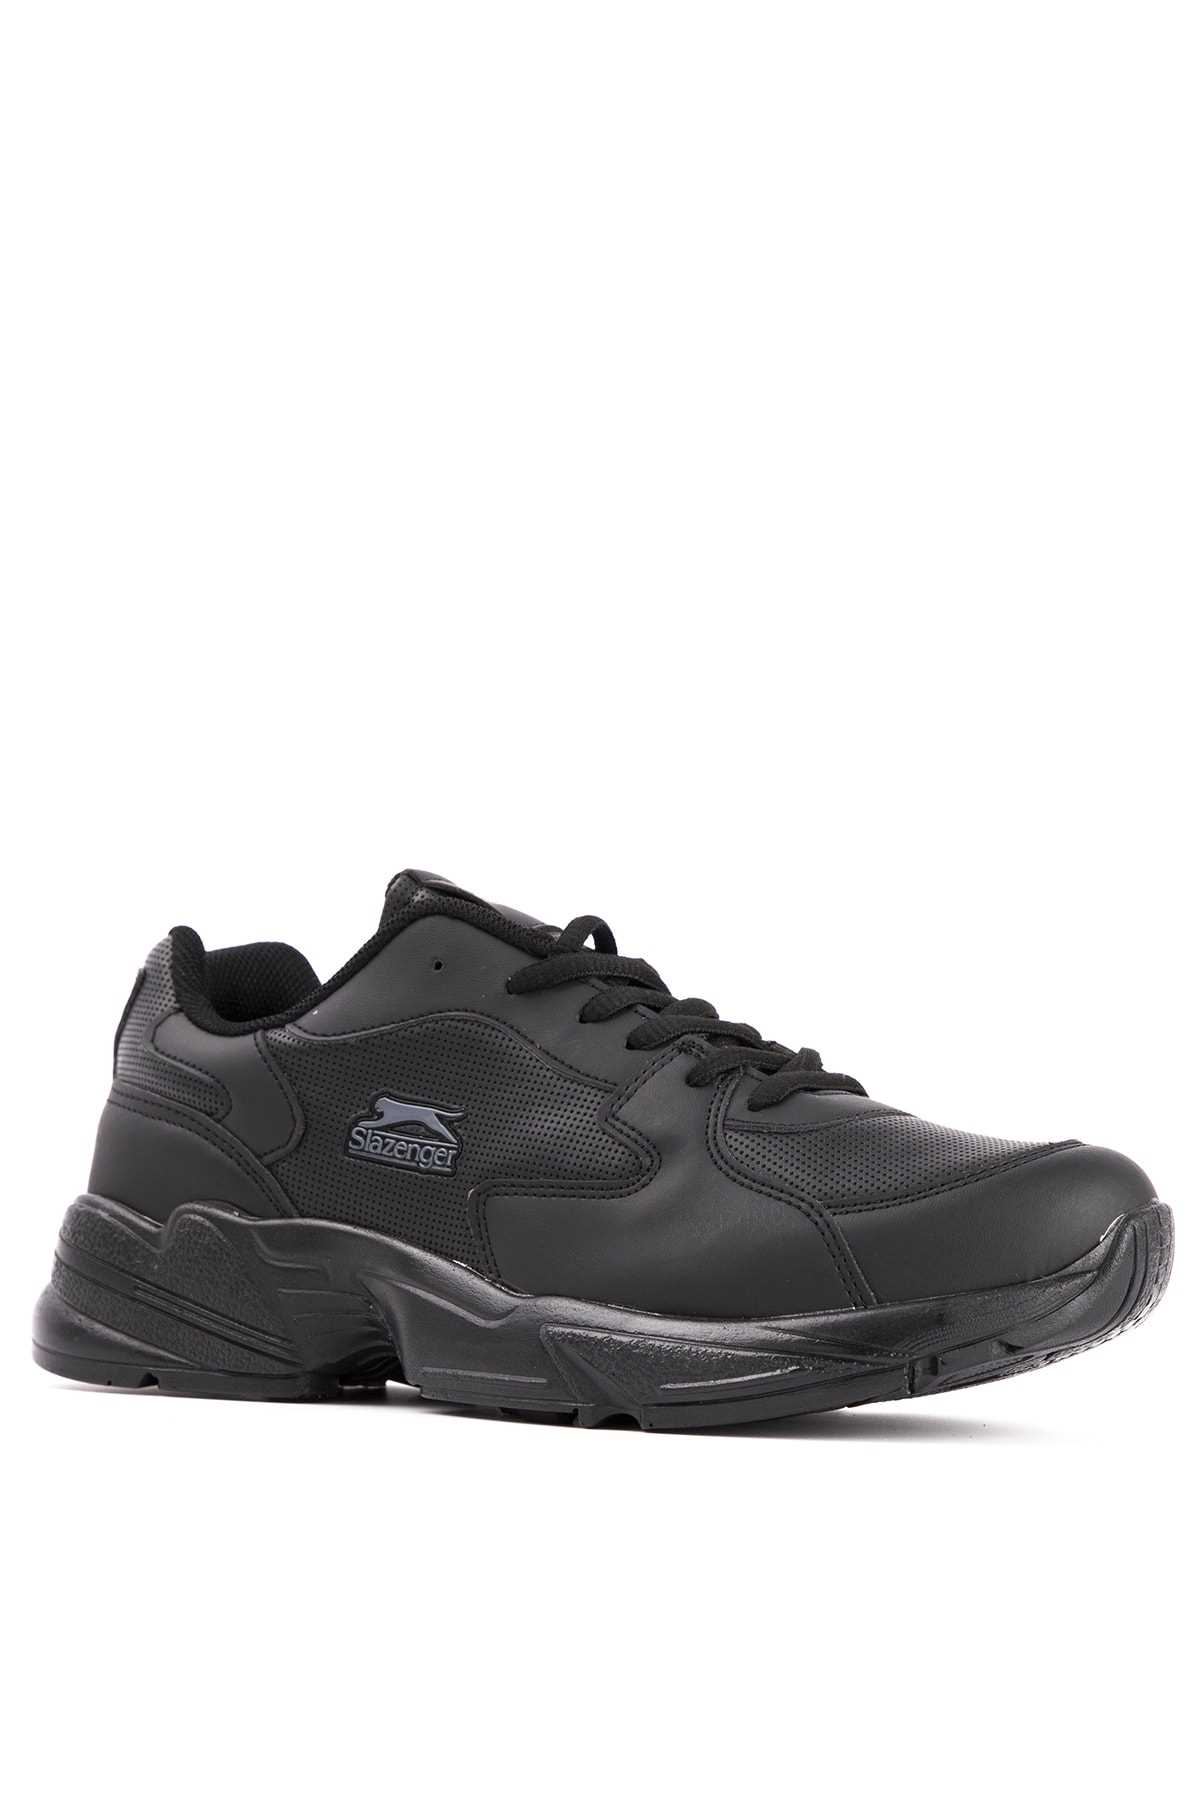 خرید انلاین کفش مخصوص دویدن مردانه طرح دار برند اسلازنگر رنگ مشکی کد ty46269297